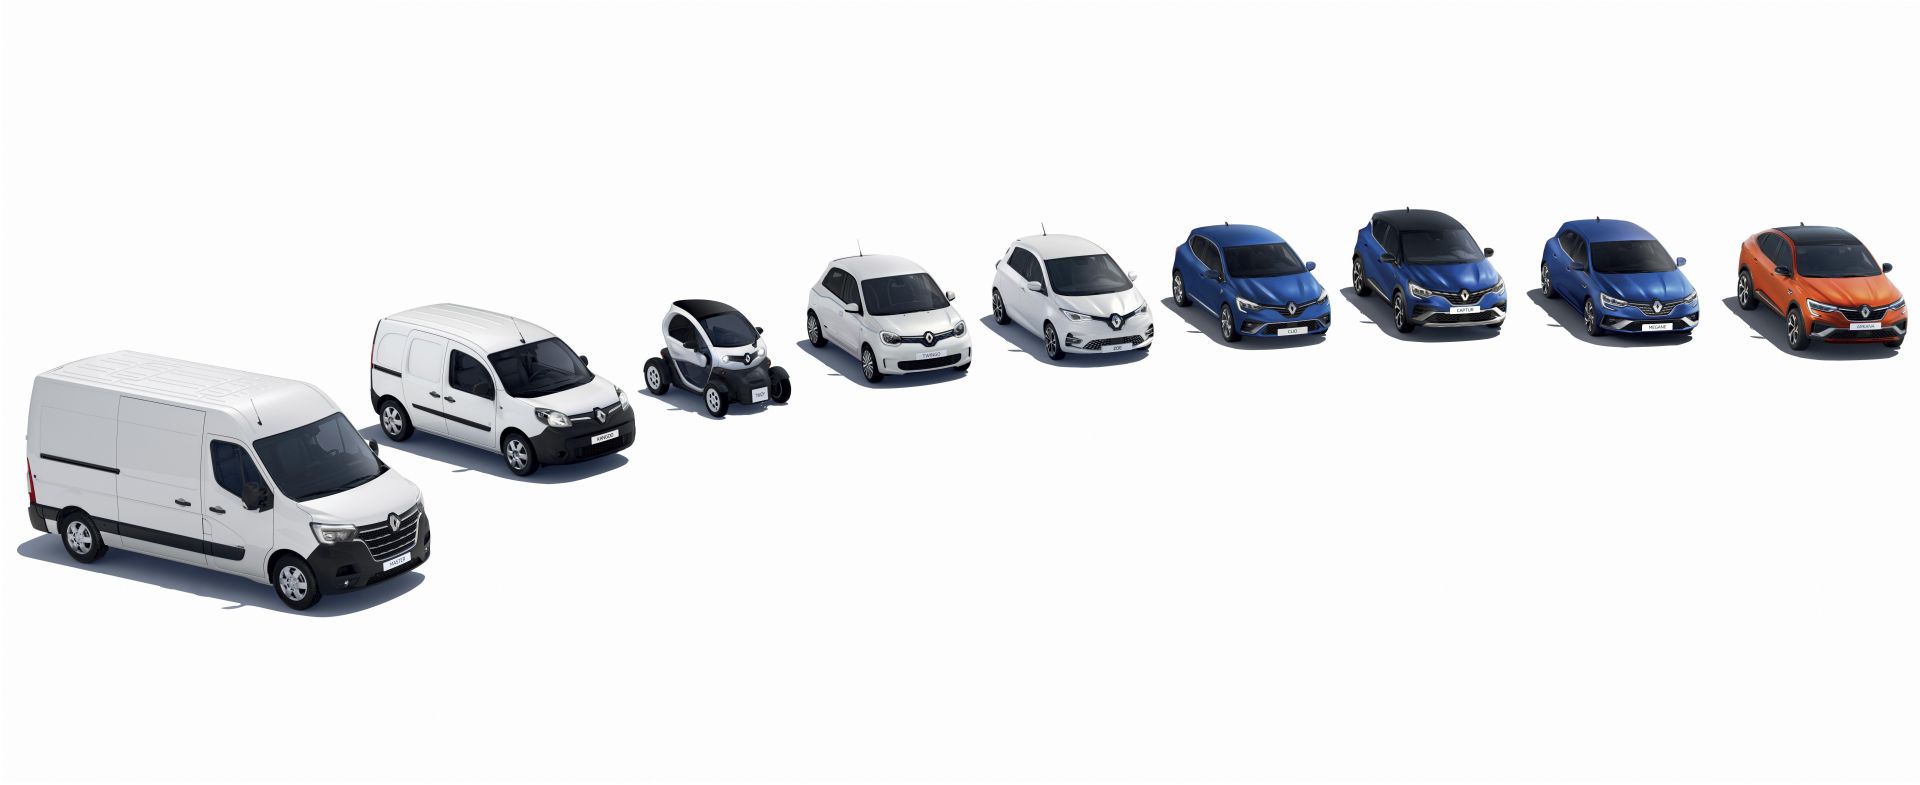 Renault je prodao 80 % više električnih vozila, a Zoe je najprodavaniji električni automobil u Europi